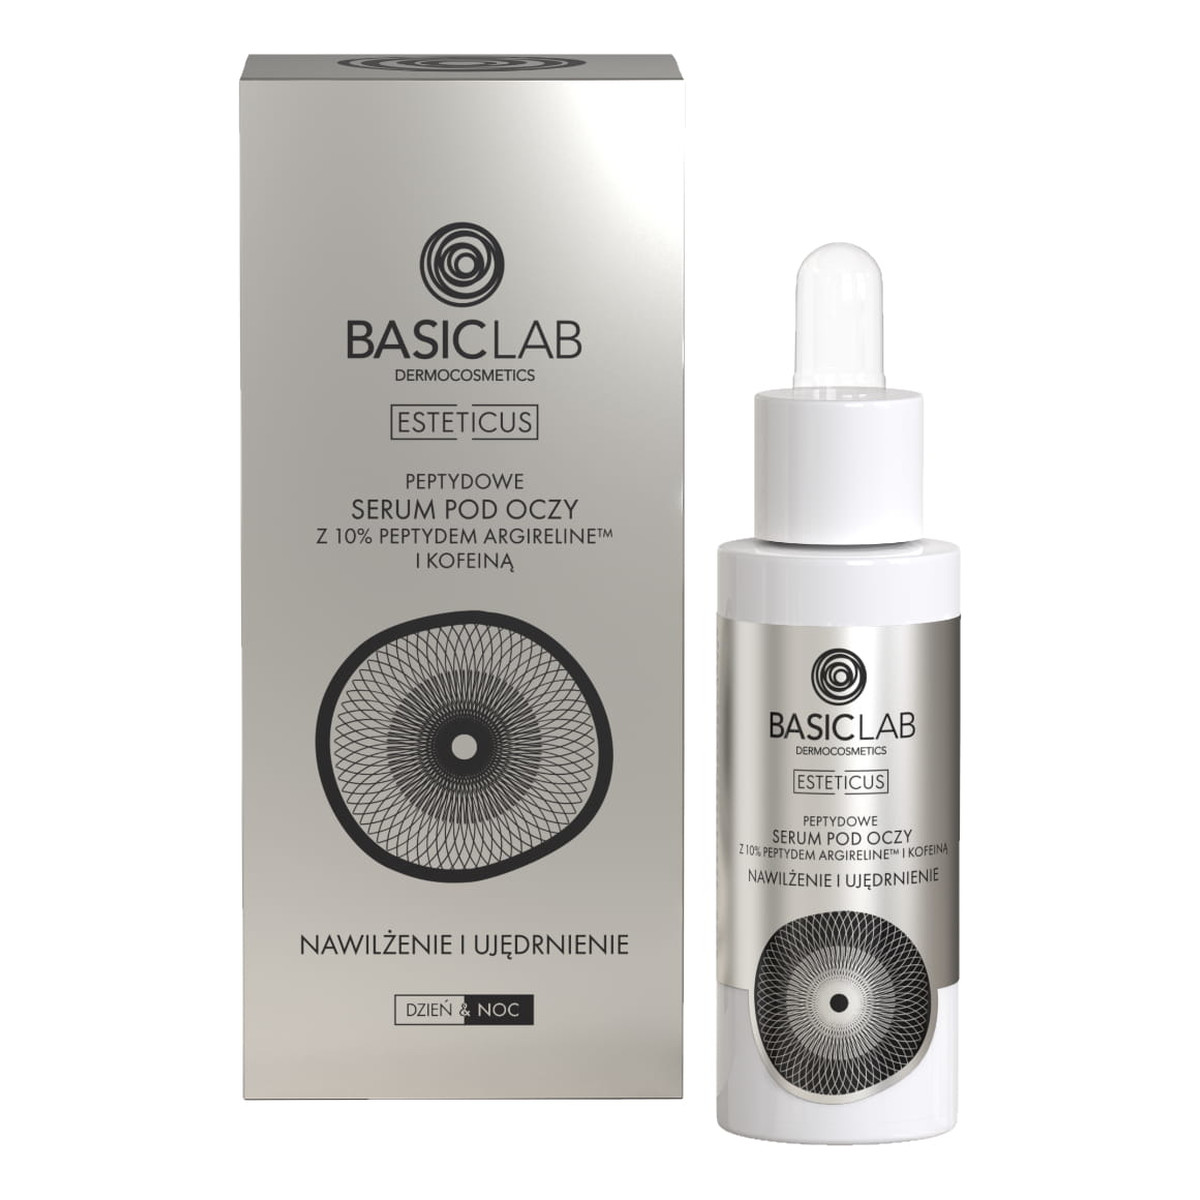 Basiclab Esteticus peptydowe serum pod oczy z 10% argireline i kofeiną nawilżenie i ujędrnienie 30ml